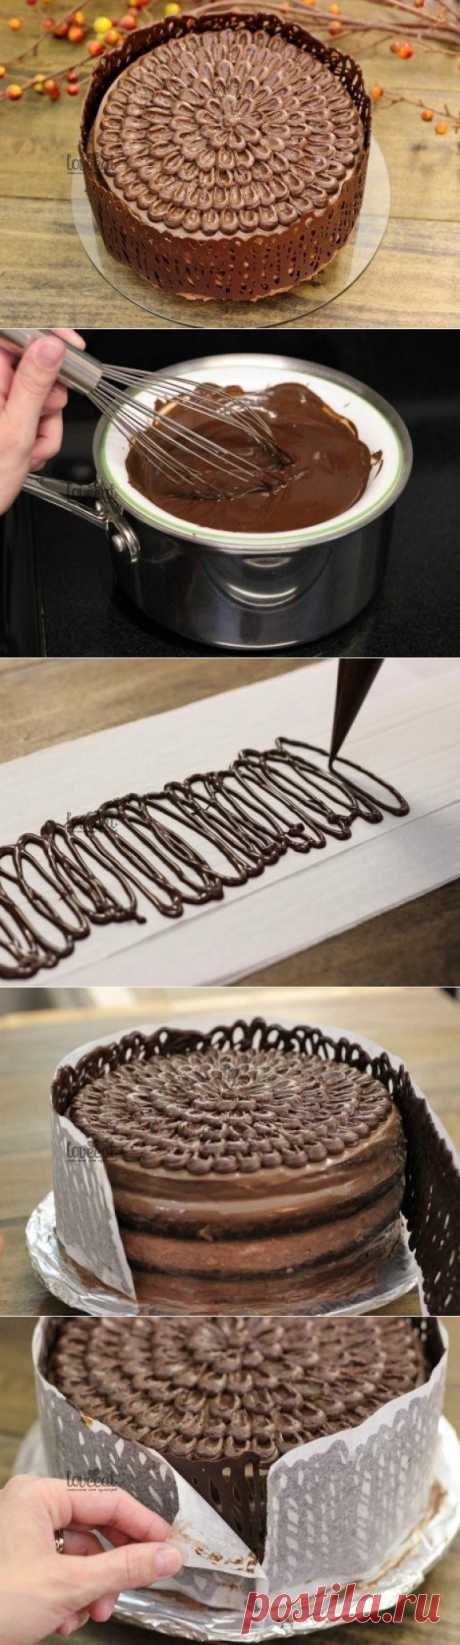 Как приготовить шоколадный заборчик для торта. - рецепт, ингридиенты и фотографии